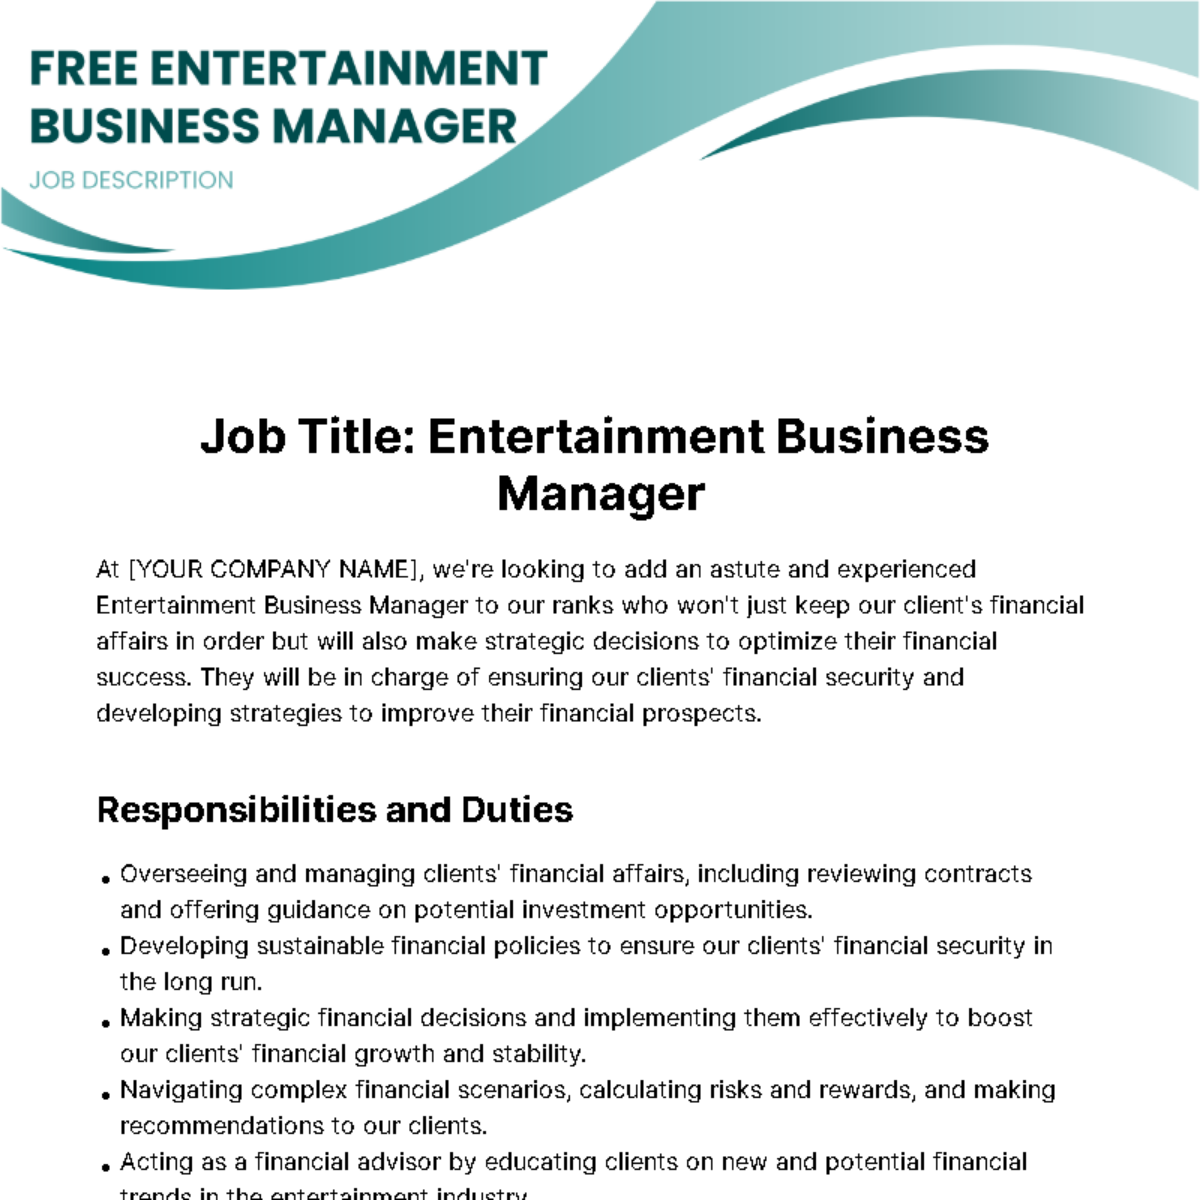 Free Entertainment Business Manager Job Description Template